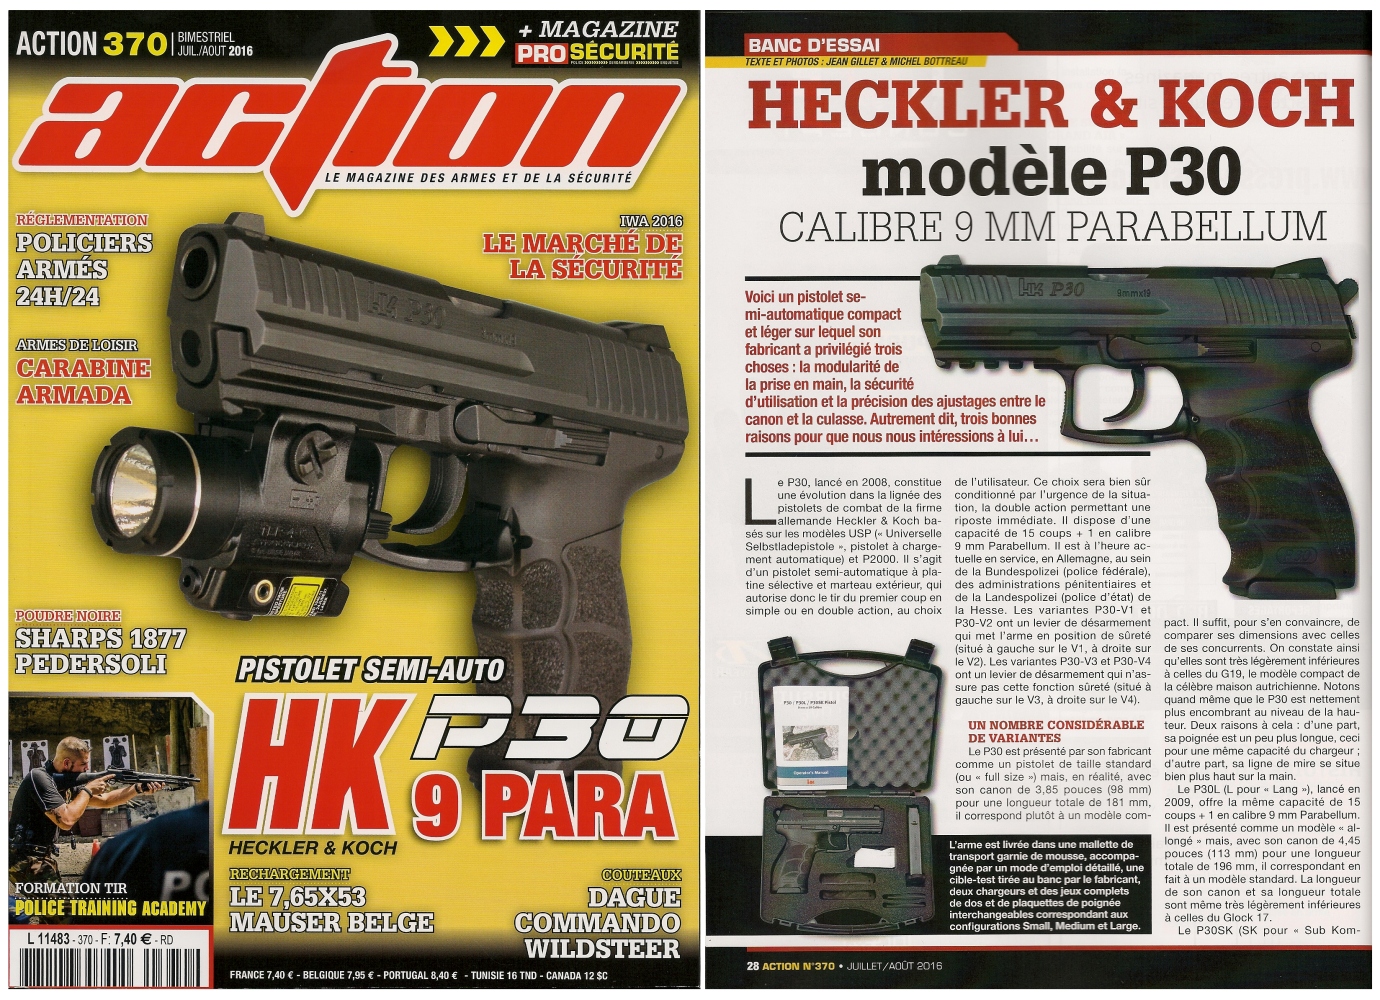 Le banc d’essai du pistolet Heckler & Koch modèle P30 a été publié sur 6 pages dans le magazine Action n°370 (juillet/août 2016). 